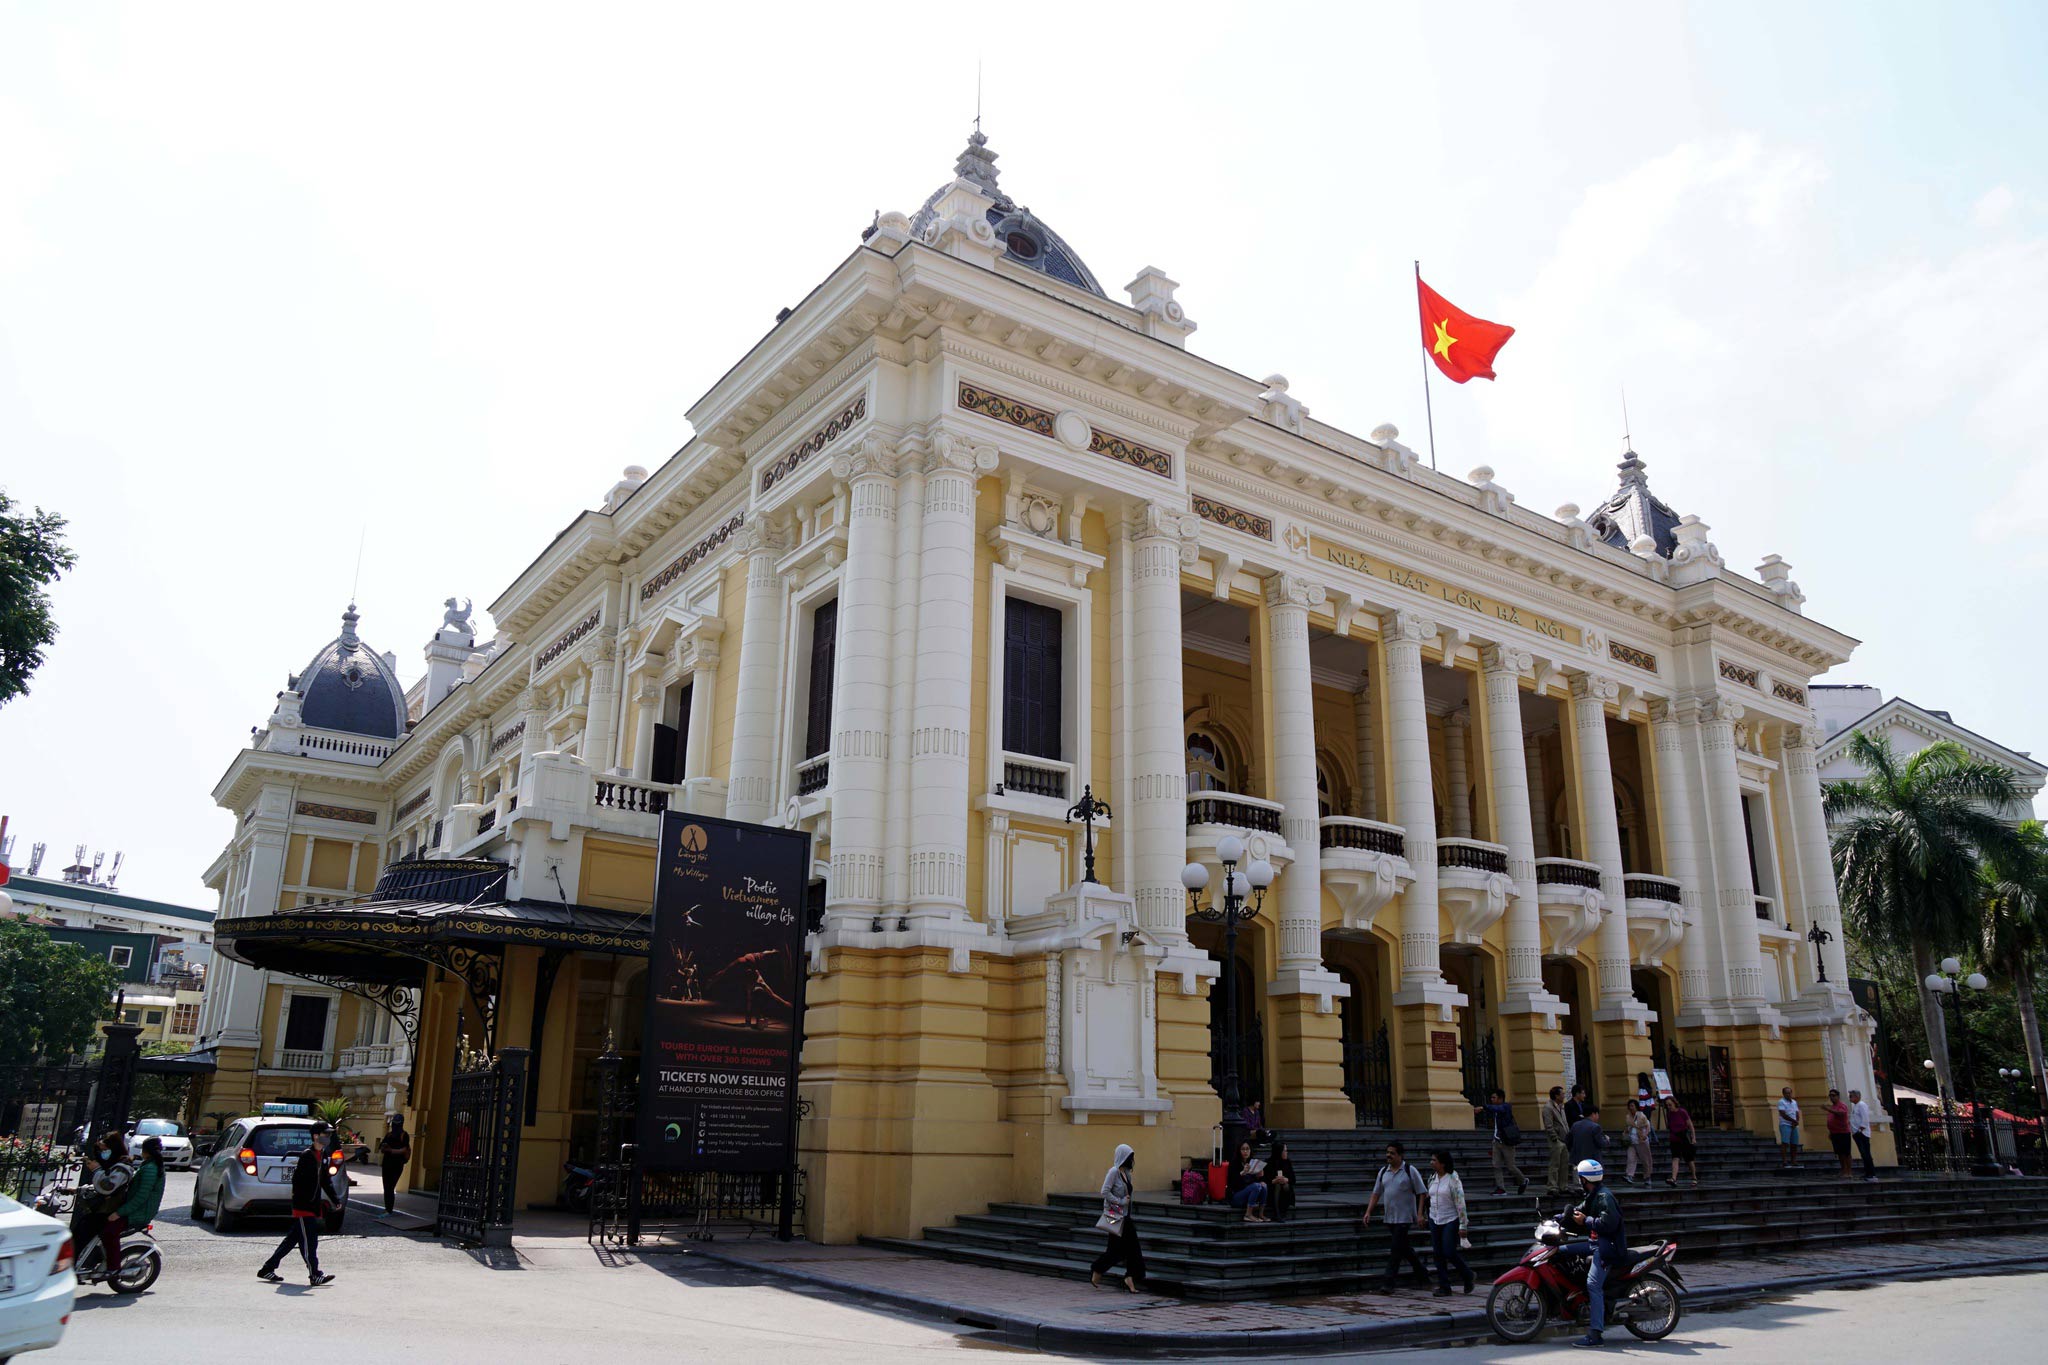 Cổng vào của nhà hát lớn Hà Nội gây ấn tượng với những chi tiết sắt mỹ nghệ mang phong cách Art Nouveau 